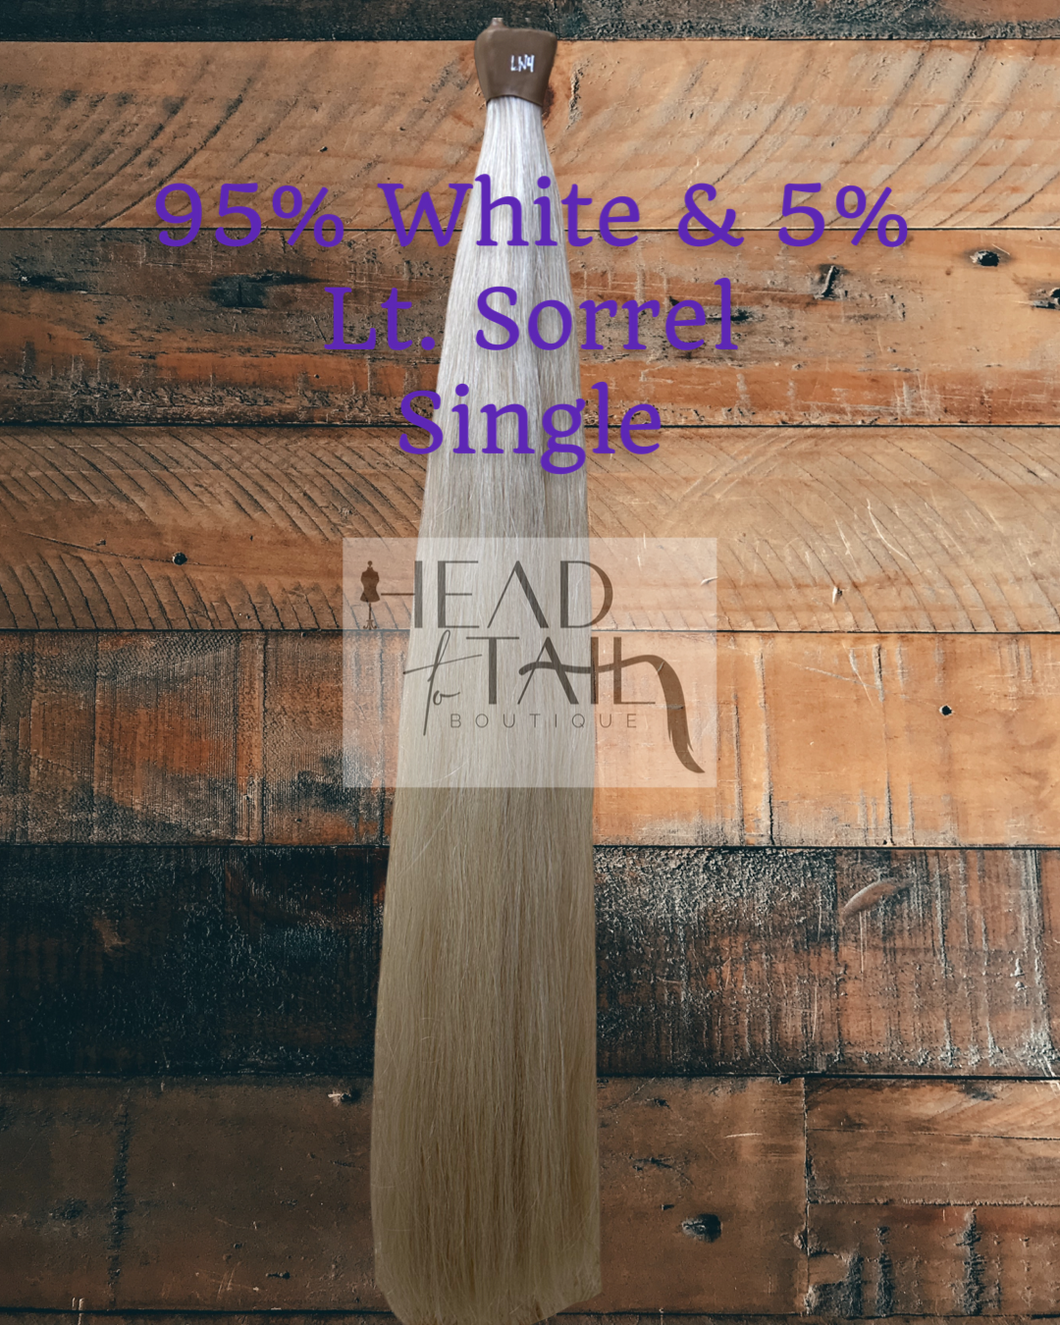 95% White and 5% Light Sorrel